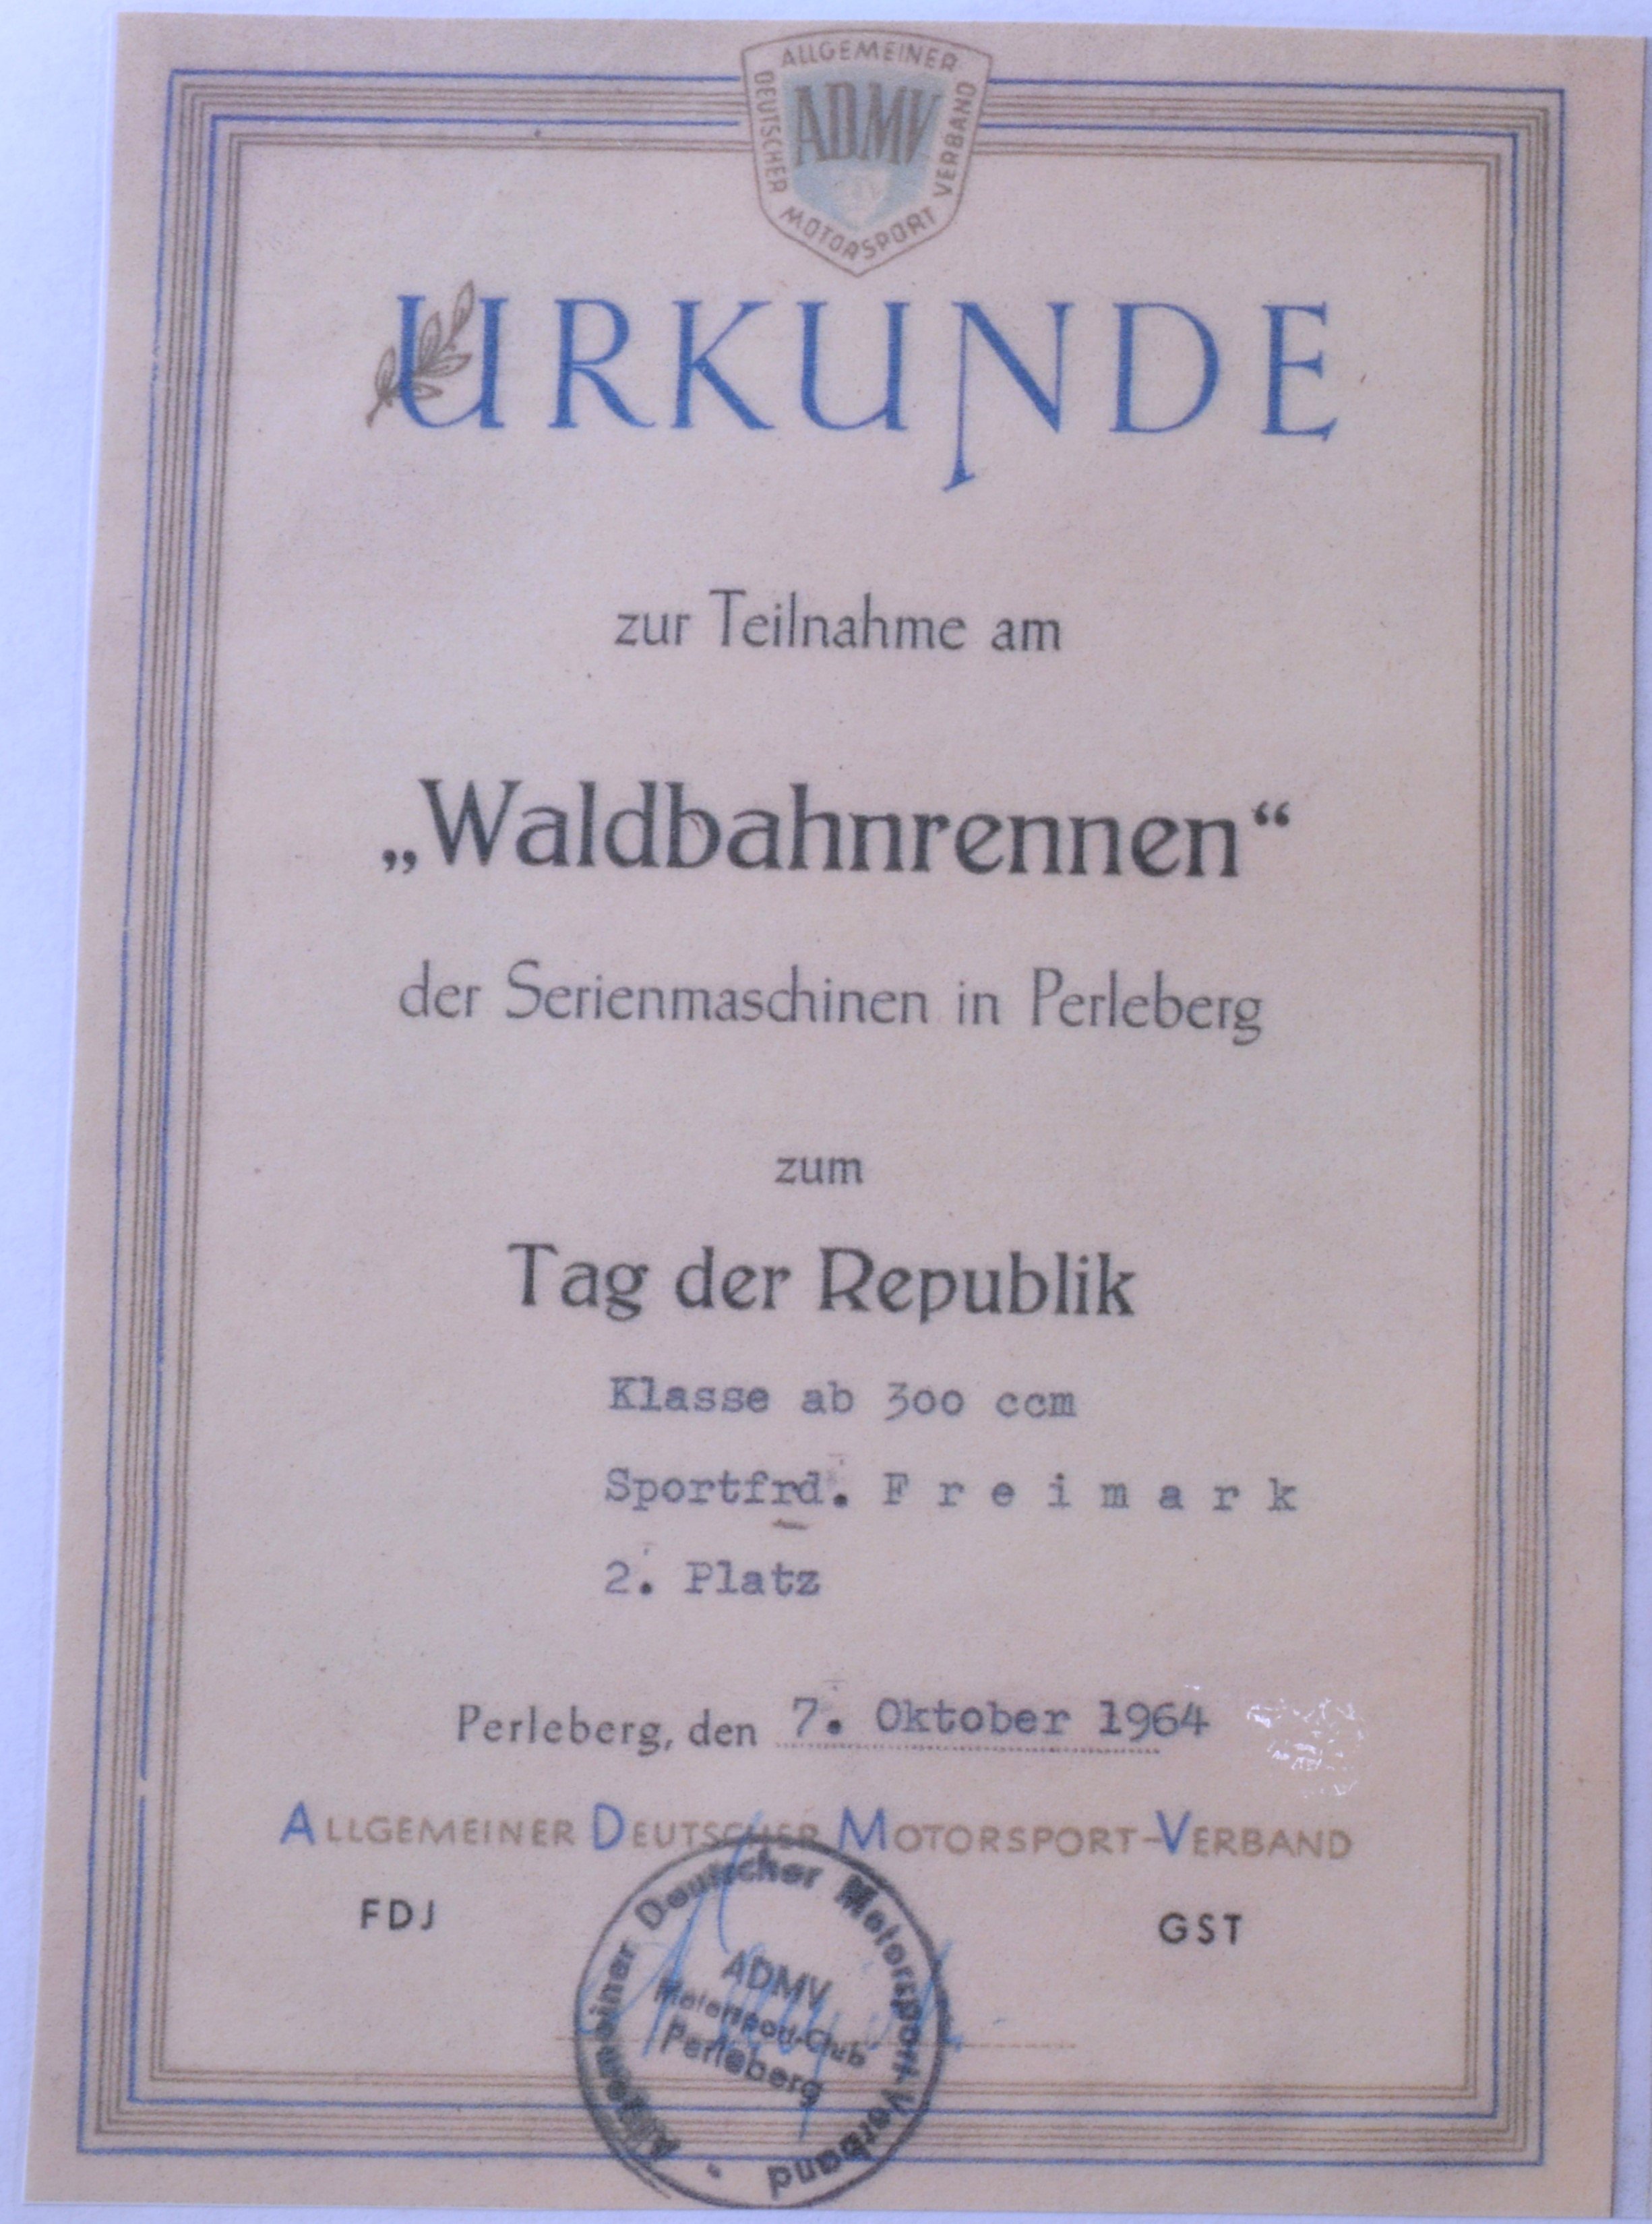 Teilnahmeurkunde "Waldbahnrennen" Hans-Peter Freimark (DDR Geschichtsmuseum im Dokumentationszentrum Perleberg CC BY-SA)